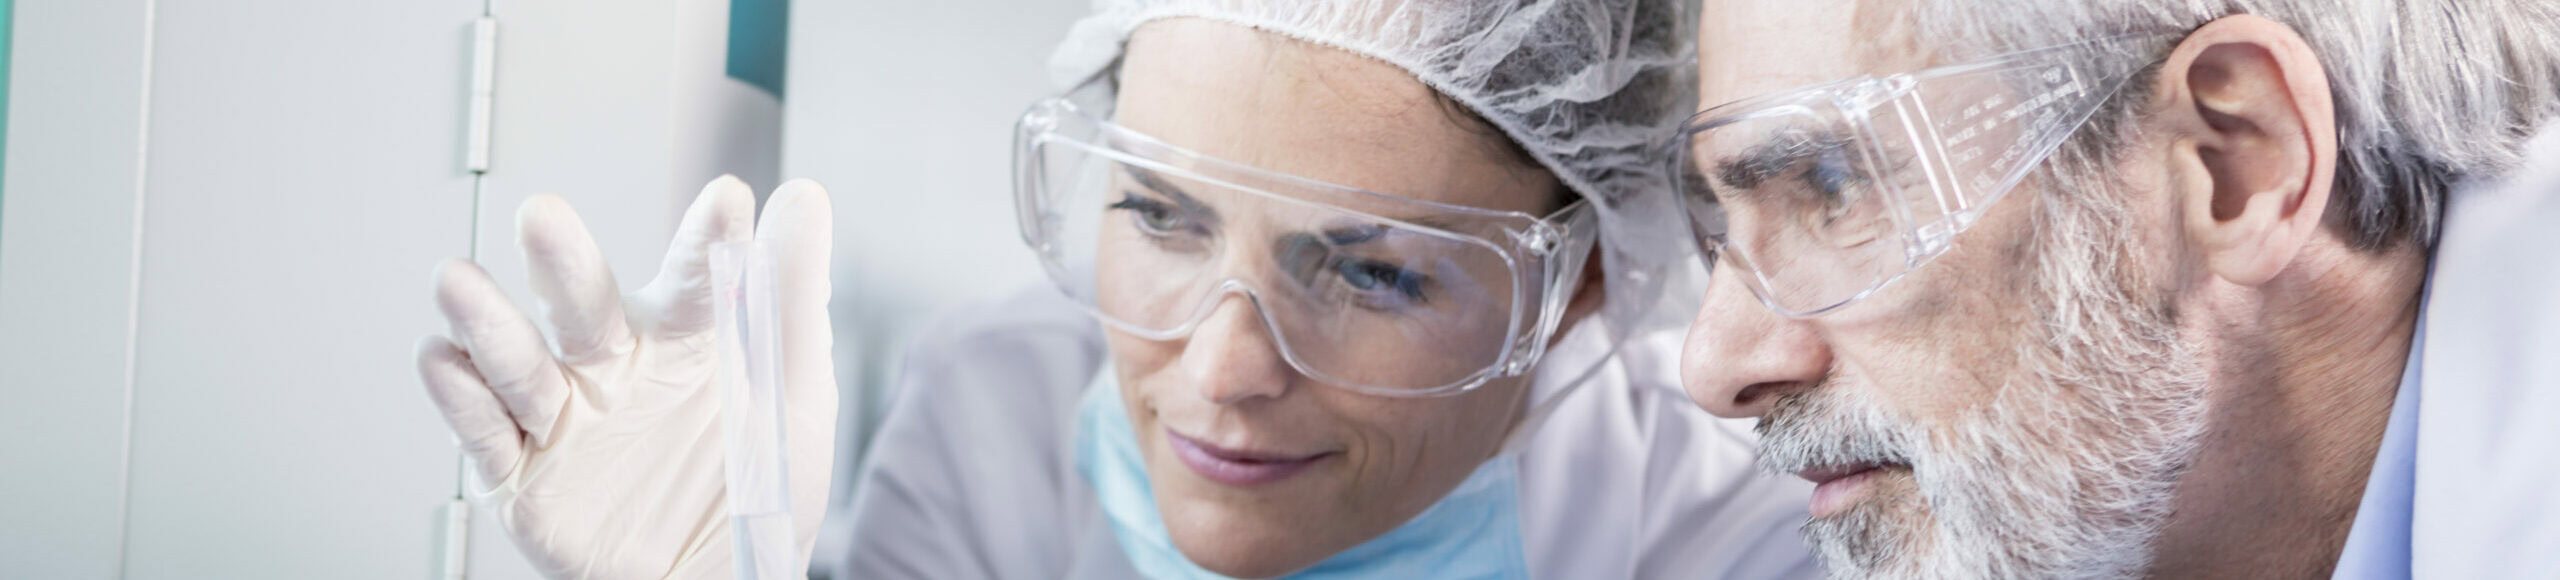 Deux scientifiques en blouse et lunettes de sécurité examinant une éprouvette au Laboratoire Bio Ard'Aisne.